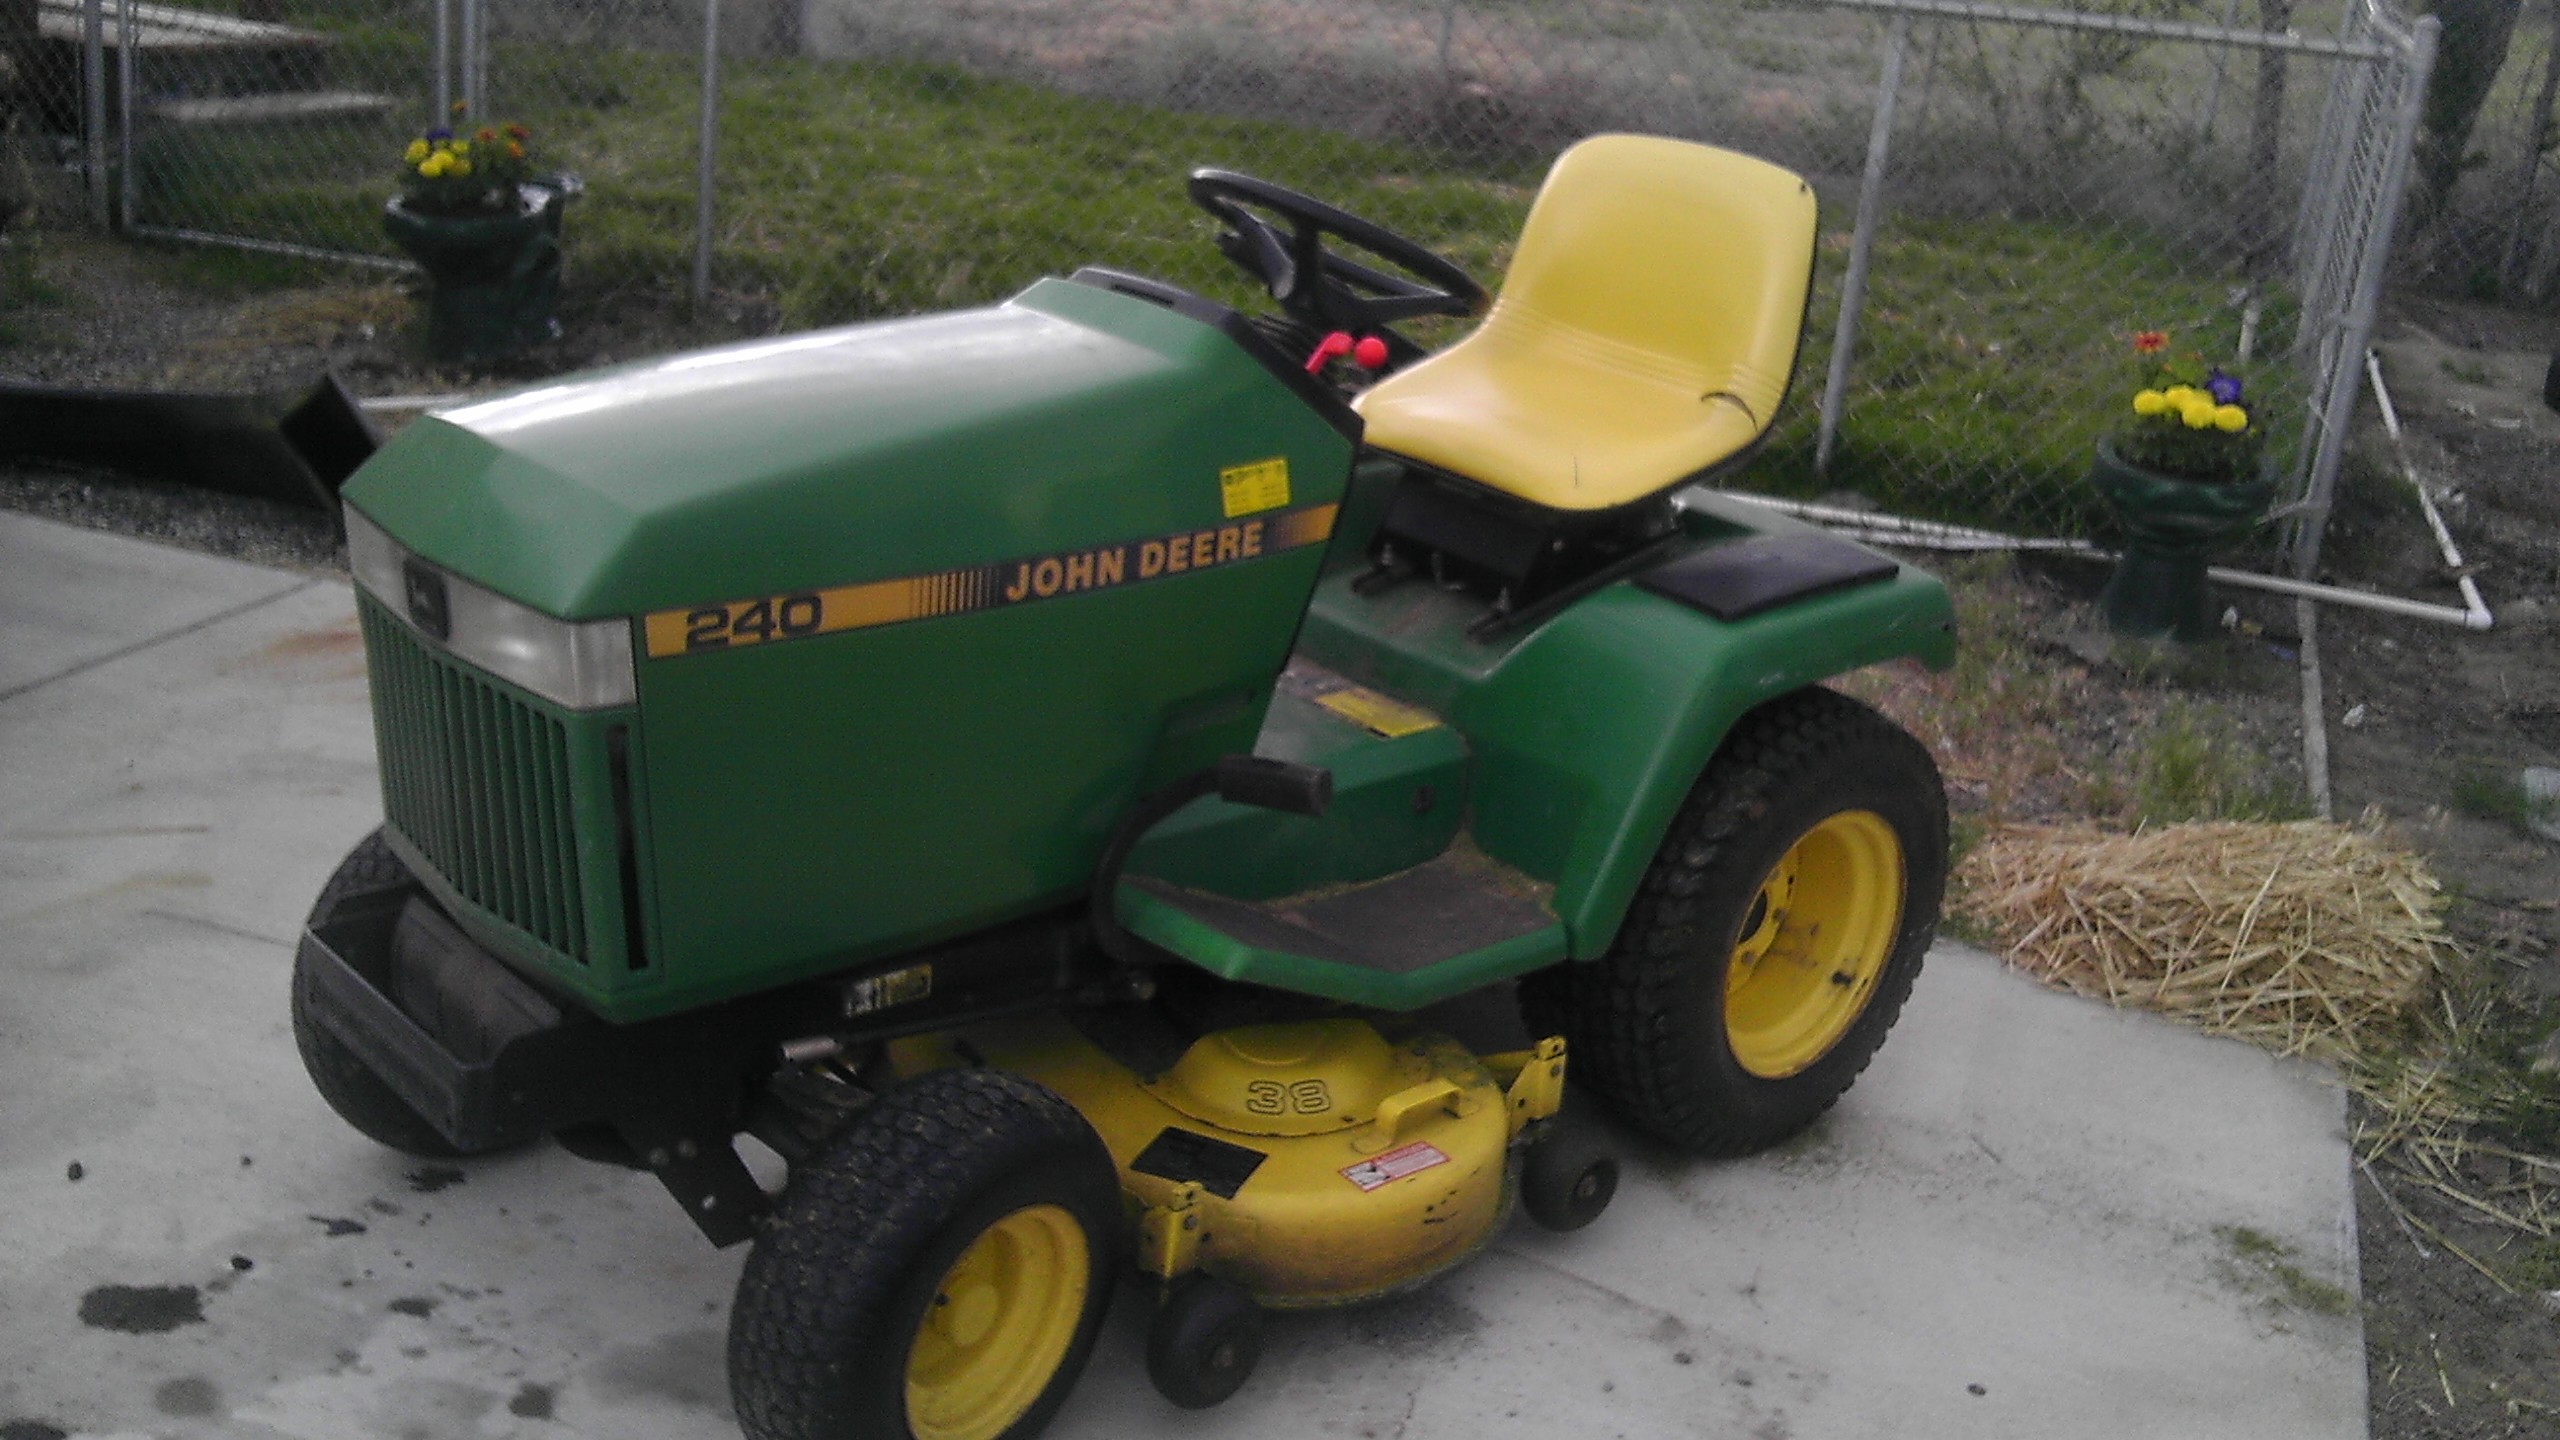 John Deere 240 garden tractor.